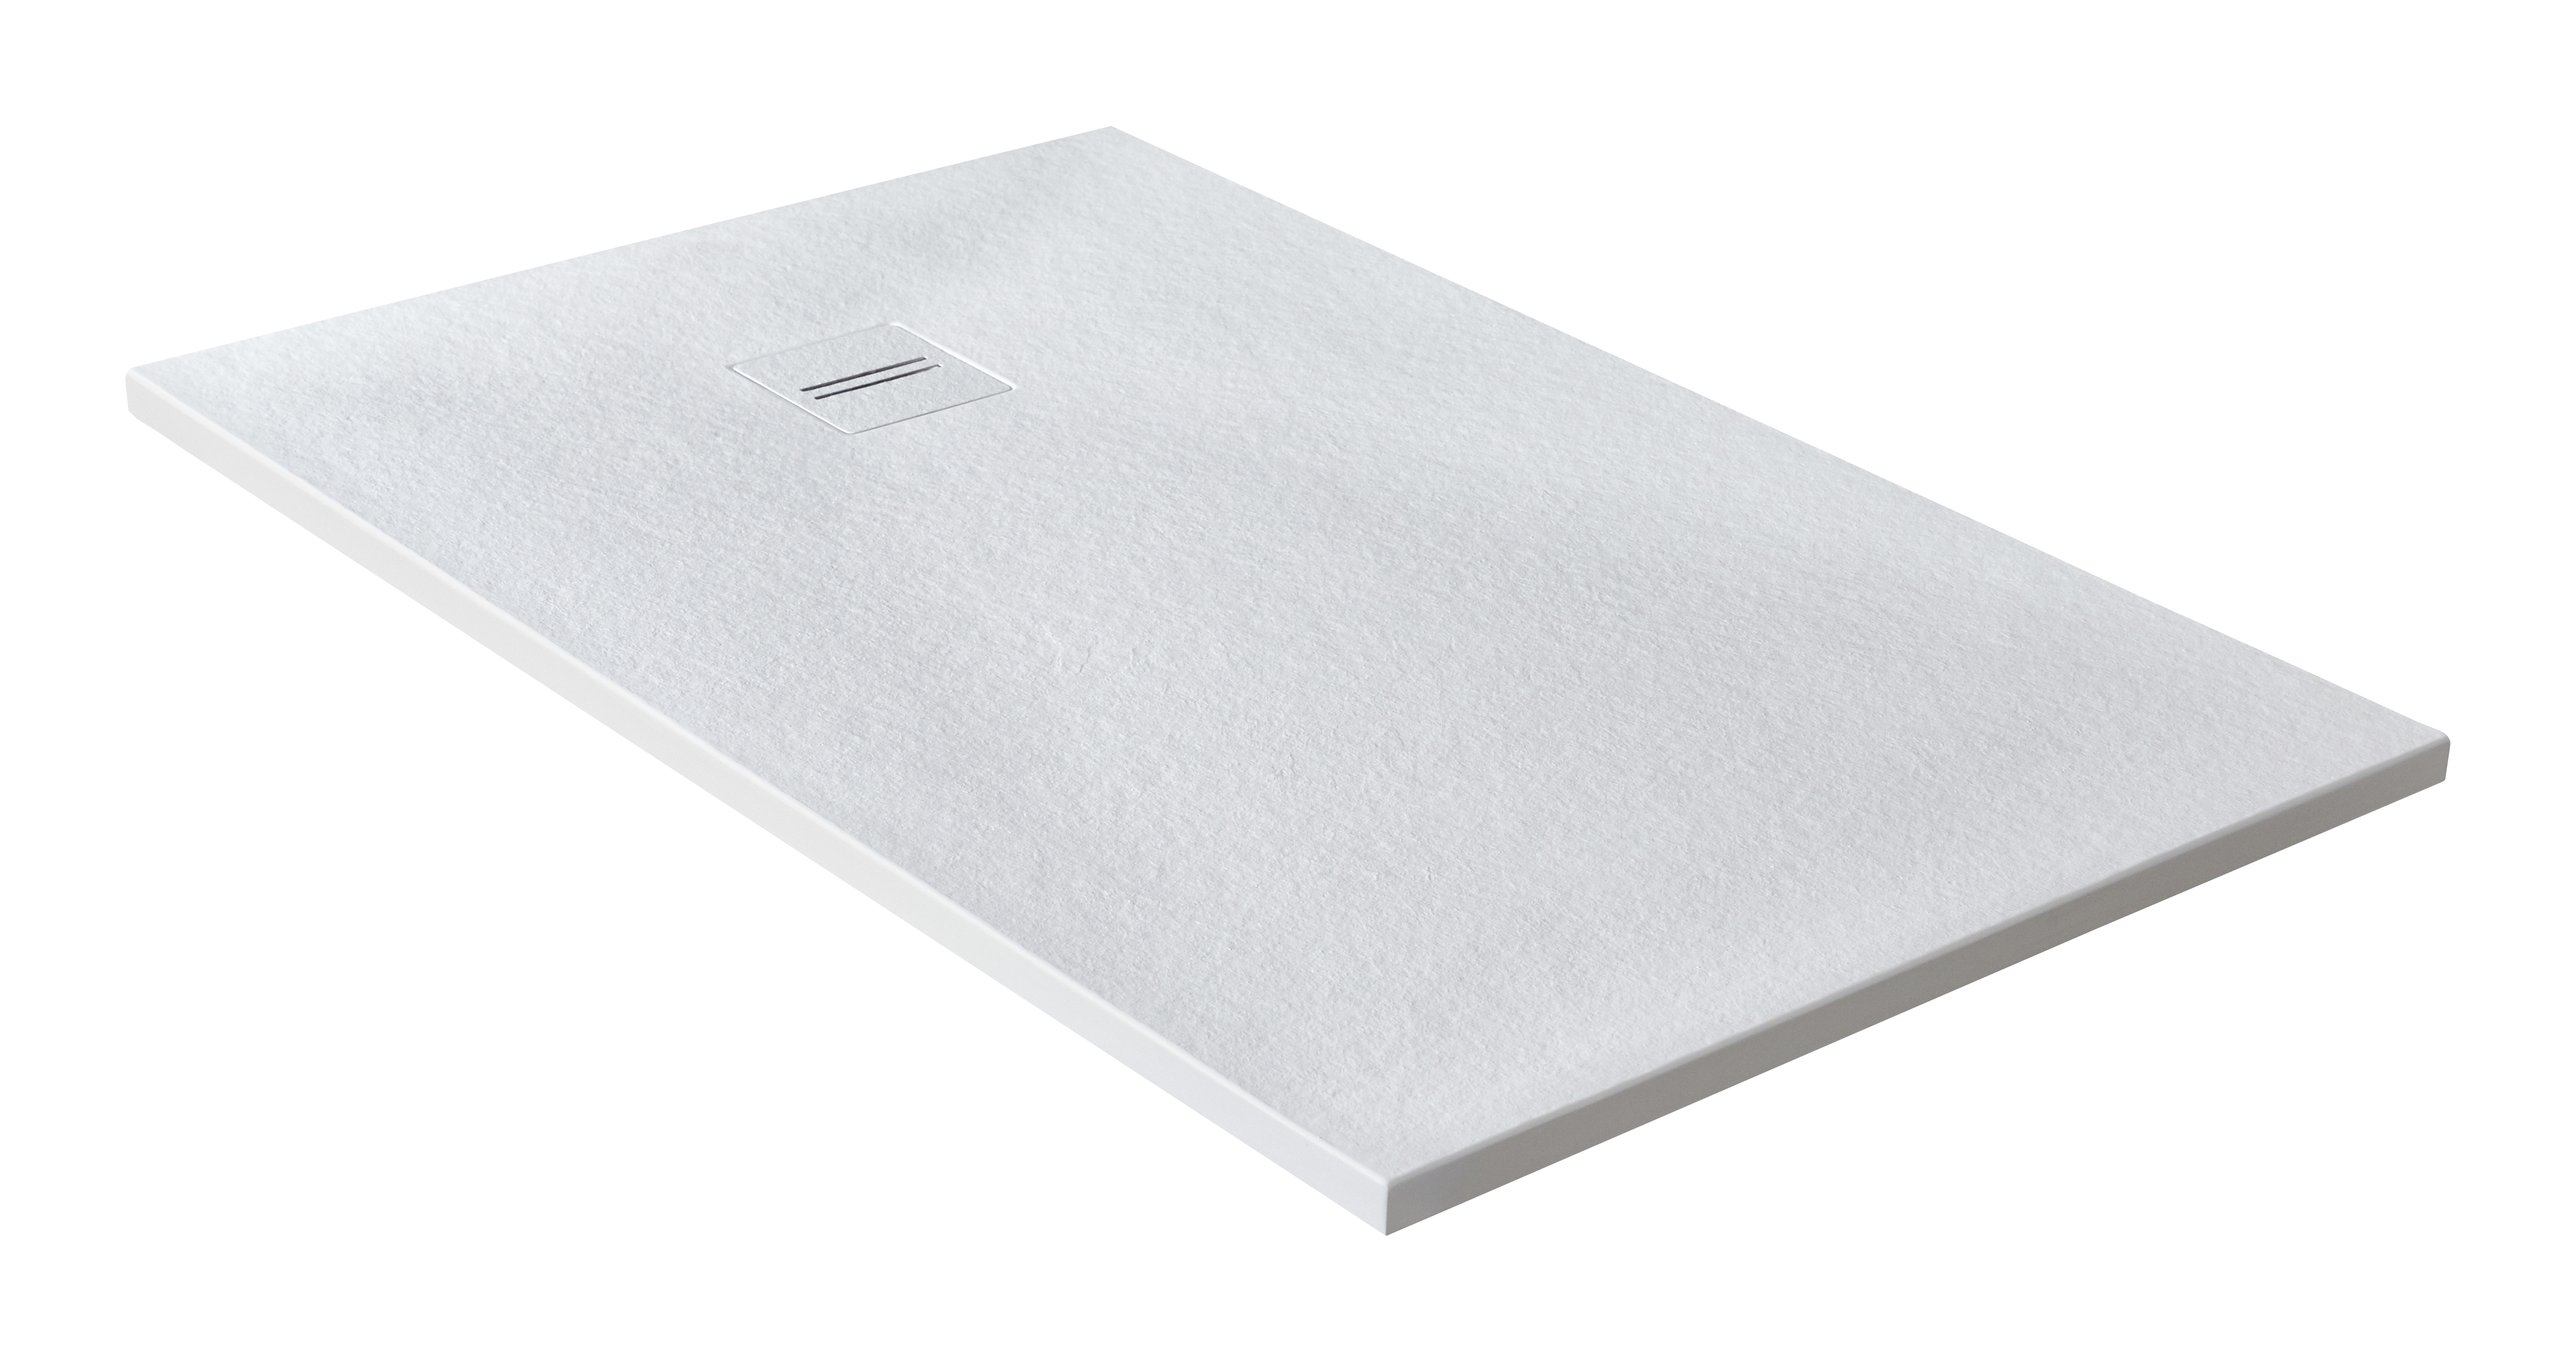 Plato de ducha cosmos 120x80 cm blanco